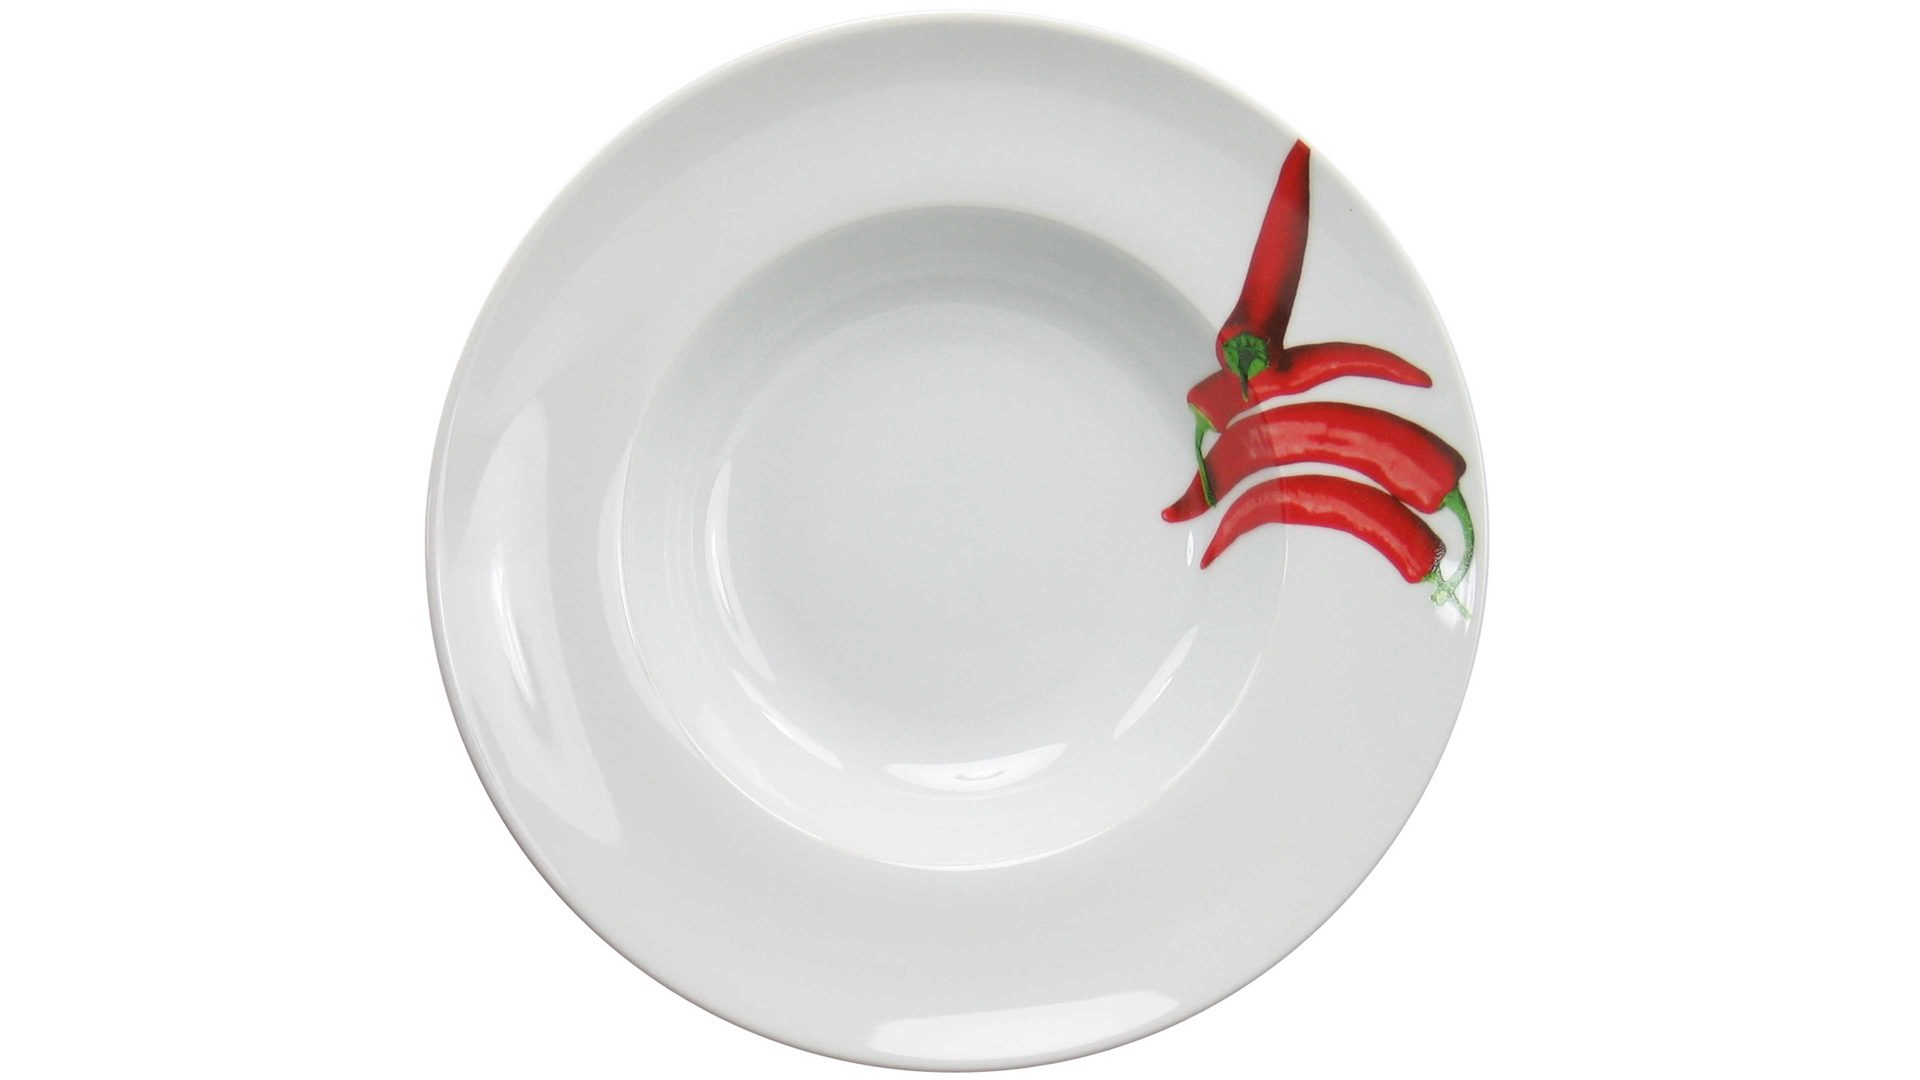 Essteller Creatable aus Porzellan in Rot CREATABLE Pastateller Europa Kräuter Chili auf weißem Porzellan – Durchmesser ca. 27 cm